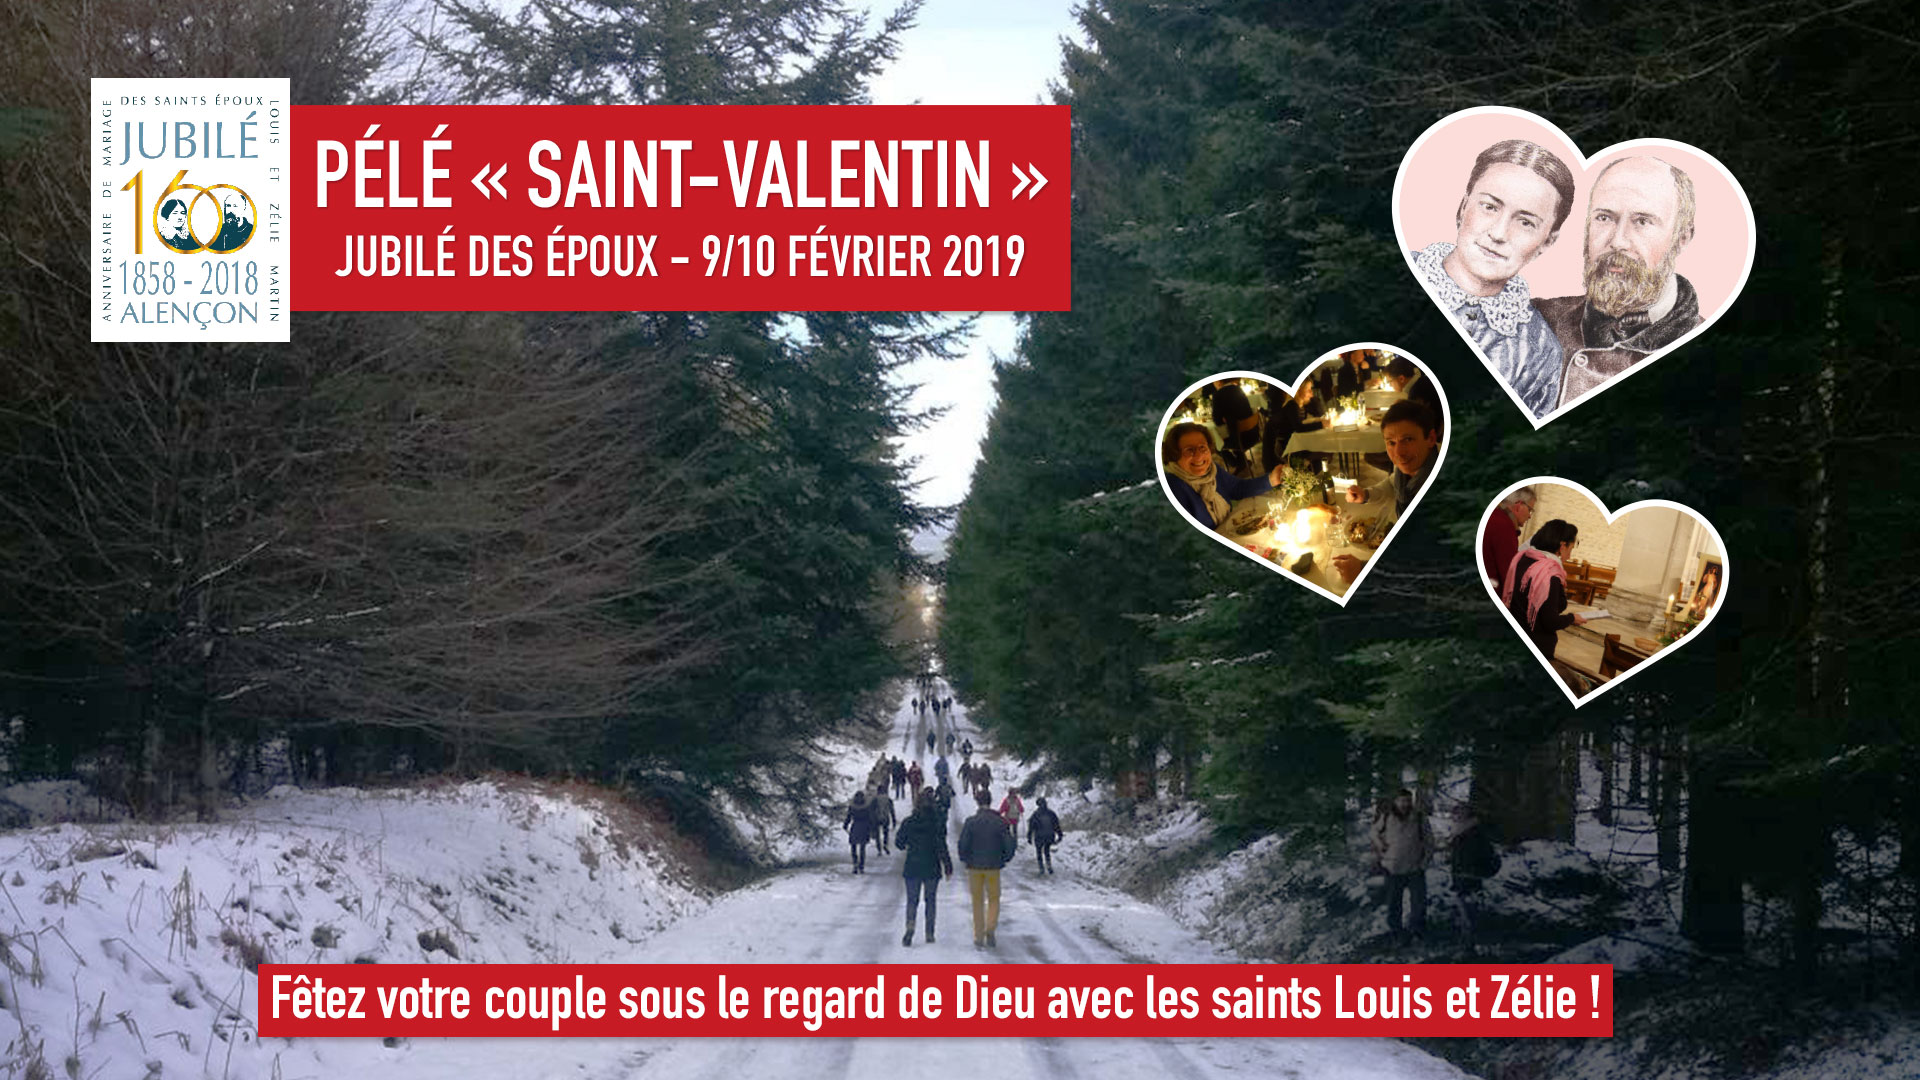 Pélé “Saint-Valentin” les 9 & 10 février 2019 au Sanctuaire d’Alençon (61)